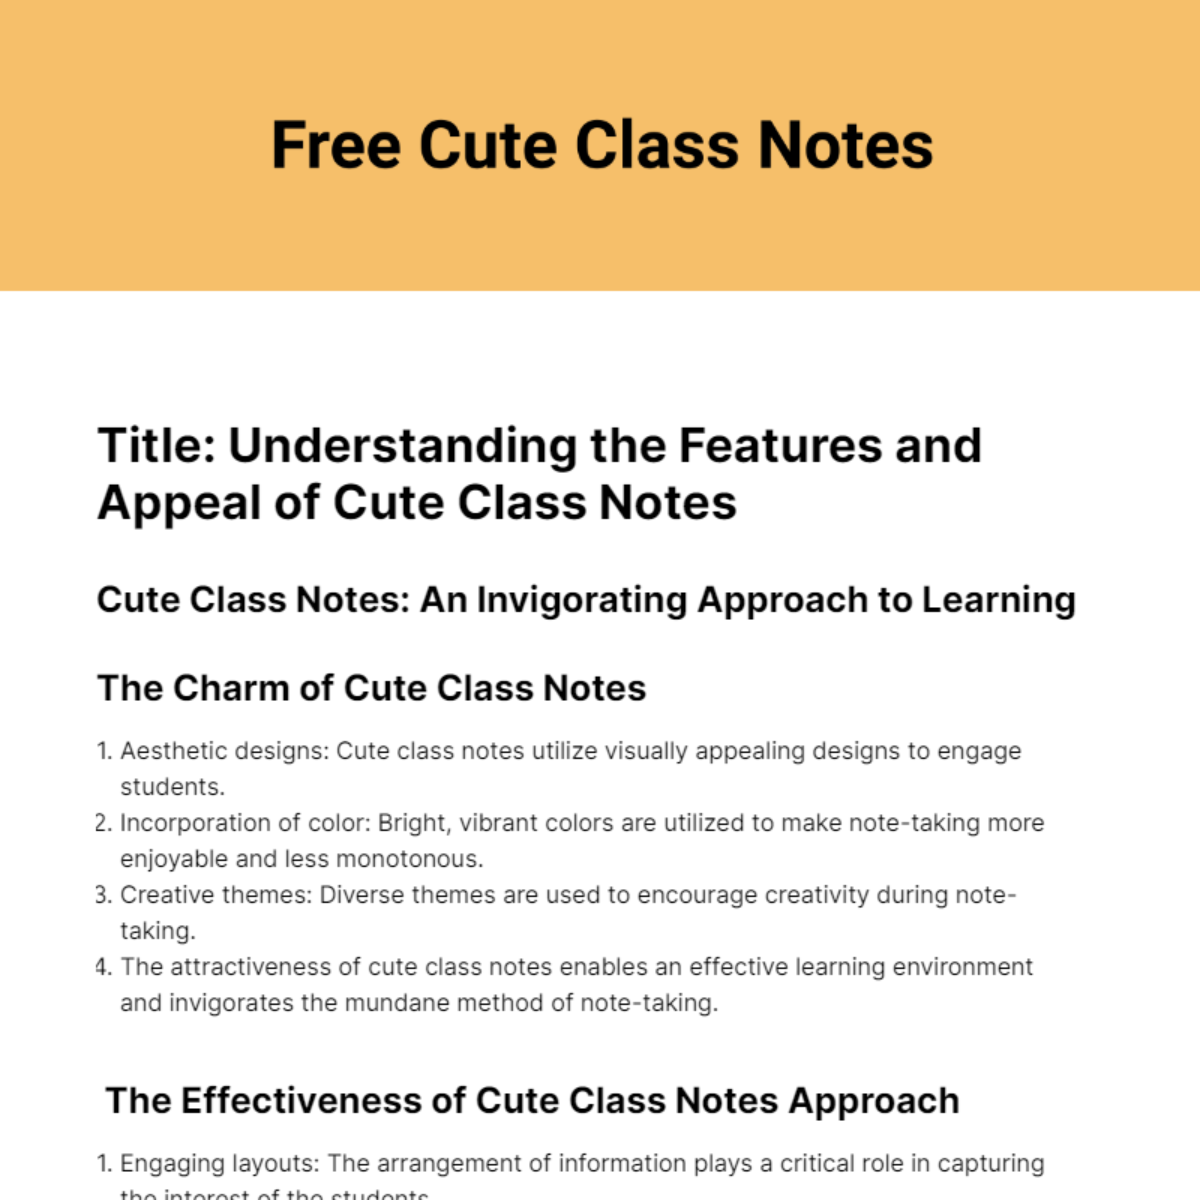 Free Cute Class Note Template